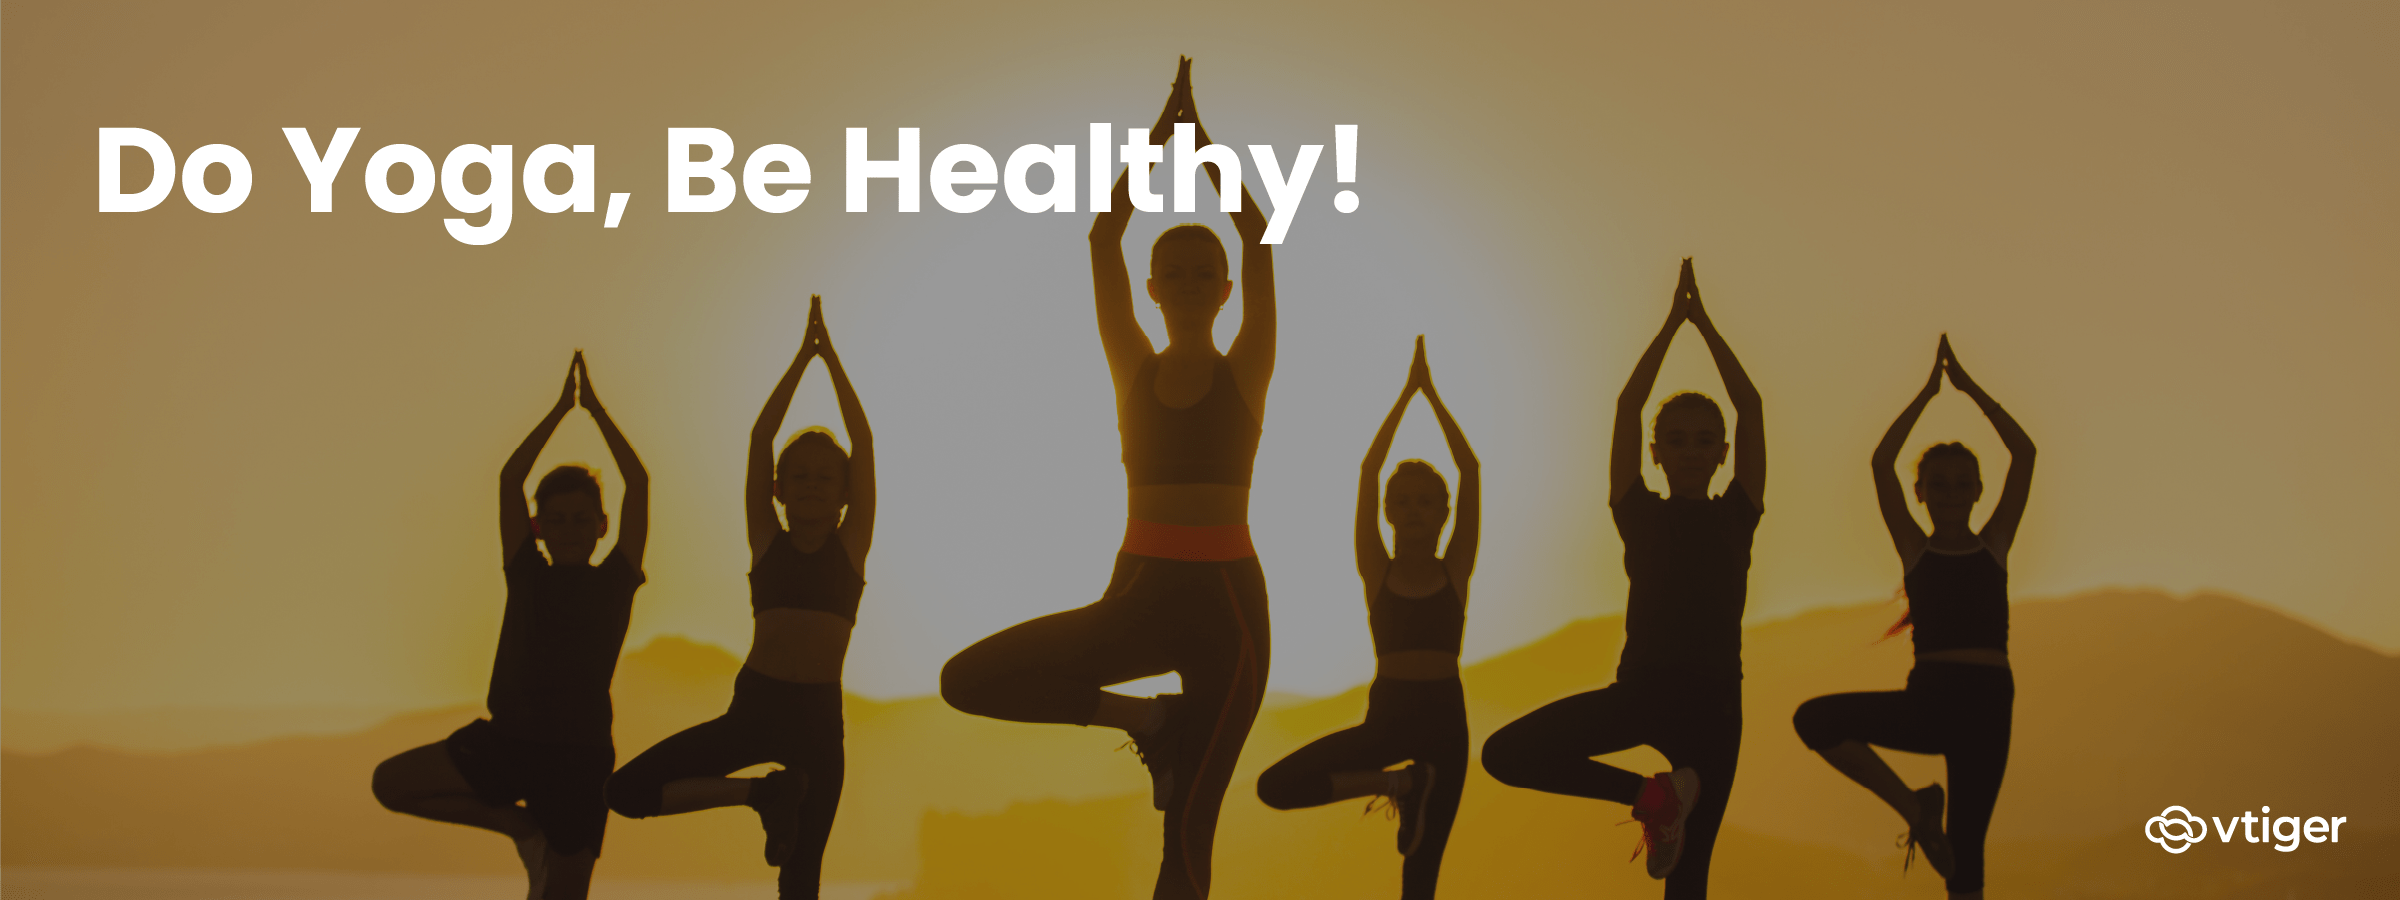 🧘Los inmensos beneficios del Yoga para cuerpo y mente.